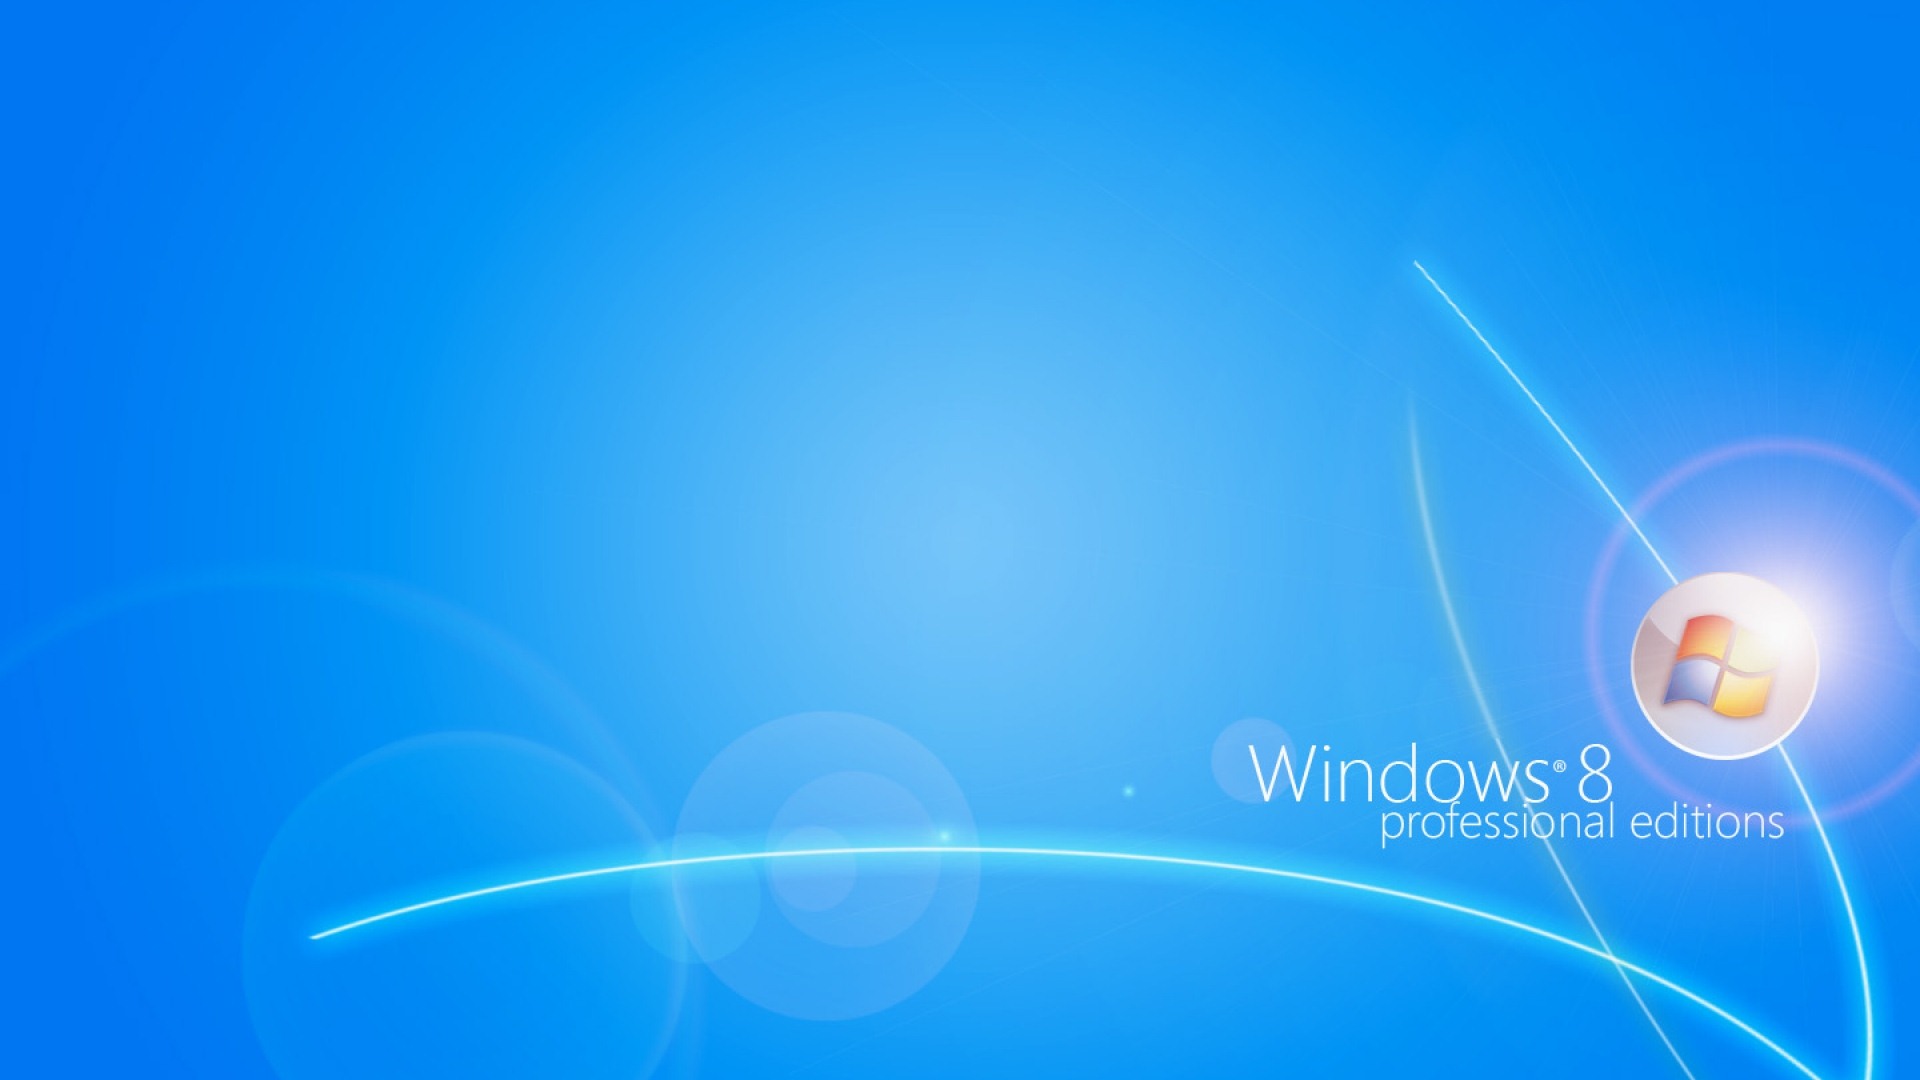 Windows 8 Theme Wallpaper (2) #14 - 1920x1080